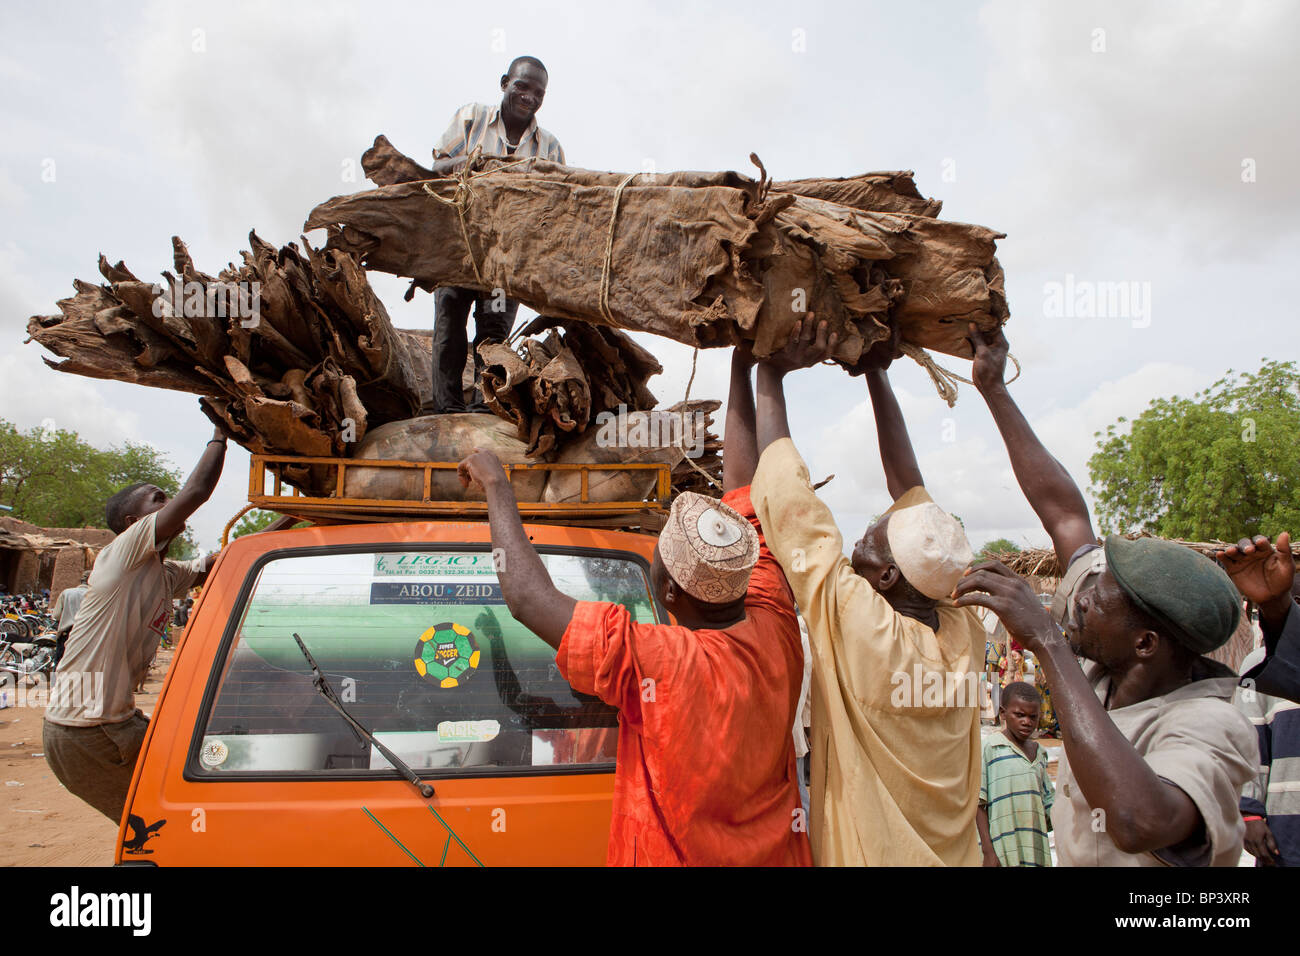 Tierhäute sind auf einen Transporter verladen die Igbo und Yorubu Stämme kauen für Protein, wenn Lebensmittel knapp sind. Stockfoto